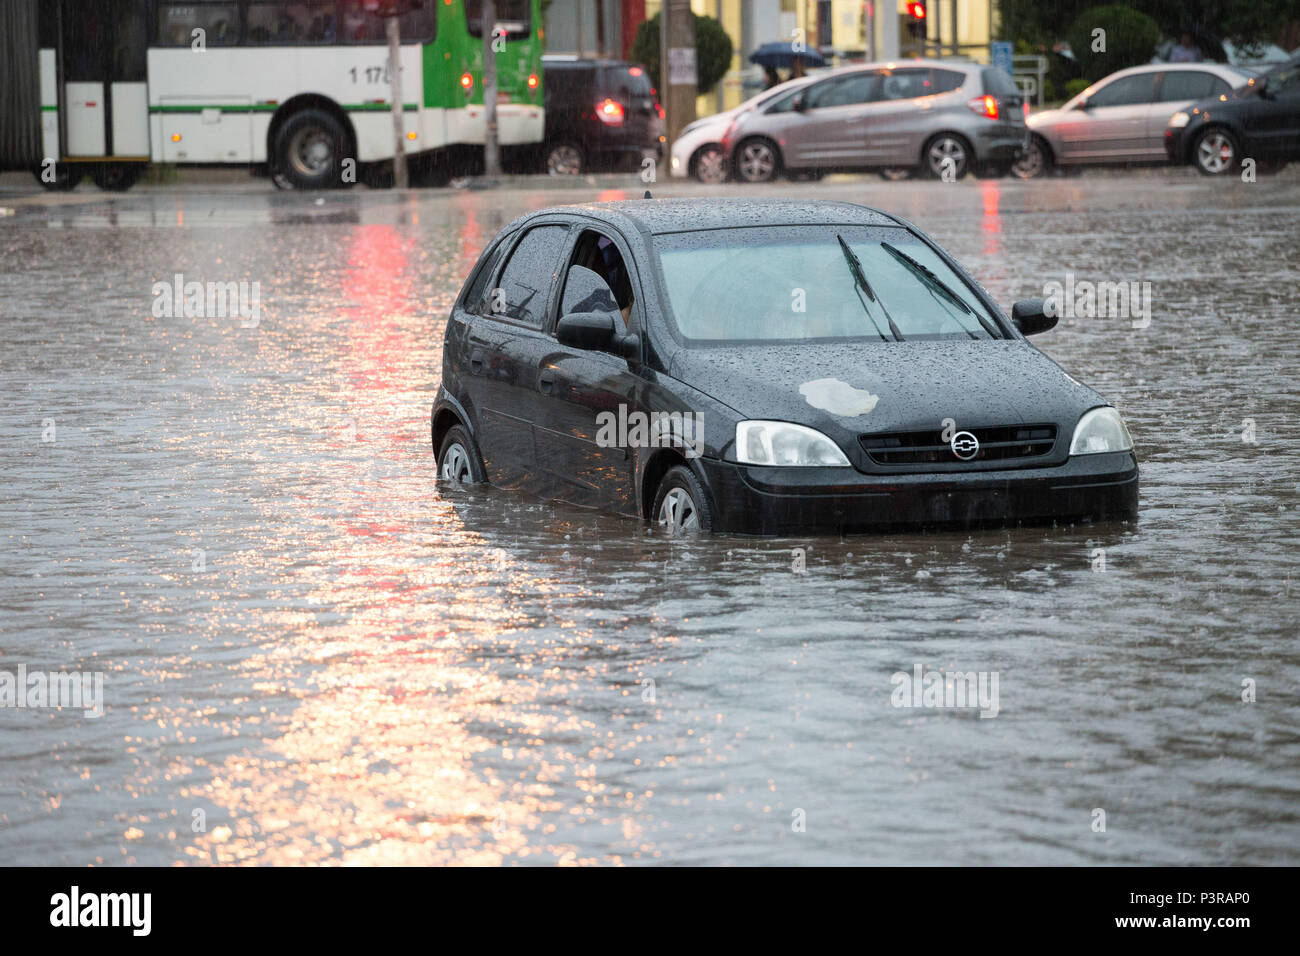 SÃO PAULO, SP - 25.02.2015: ALAGAMENTO EM SÃO PAULO - Pessoas ilhadas dentro de carro na avenida Marquês de São Vicente, após enchente devido a forte chuva. (Foto: Luis Blanco / Fotoarena) Stock Photo